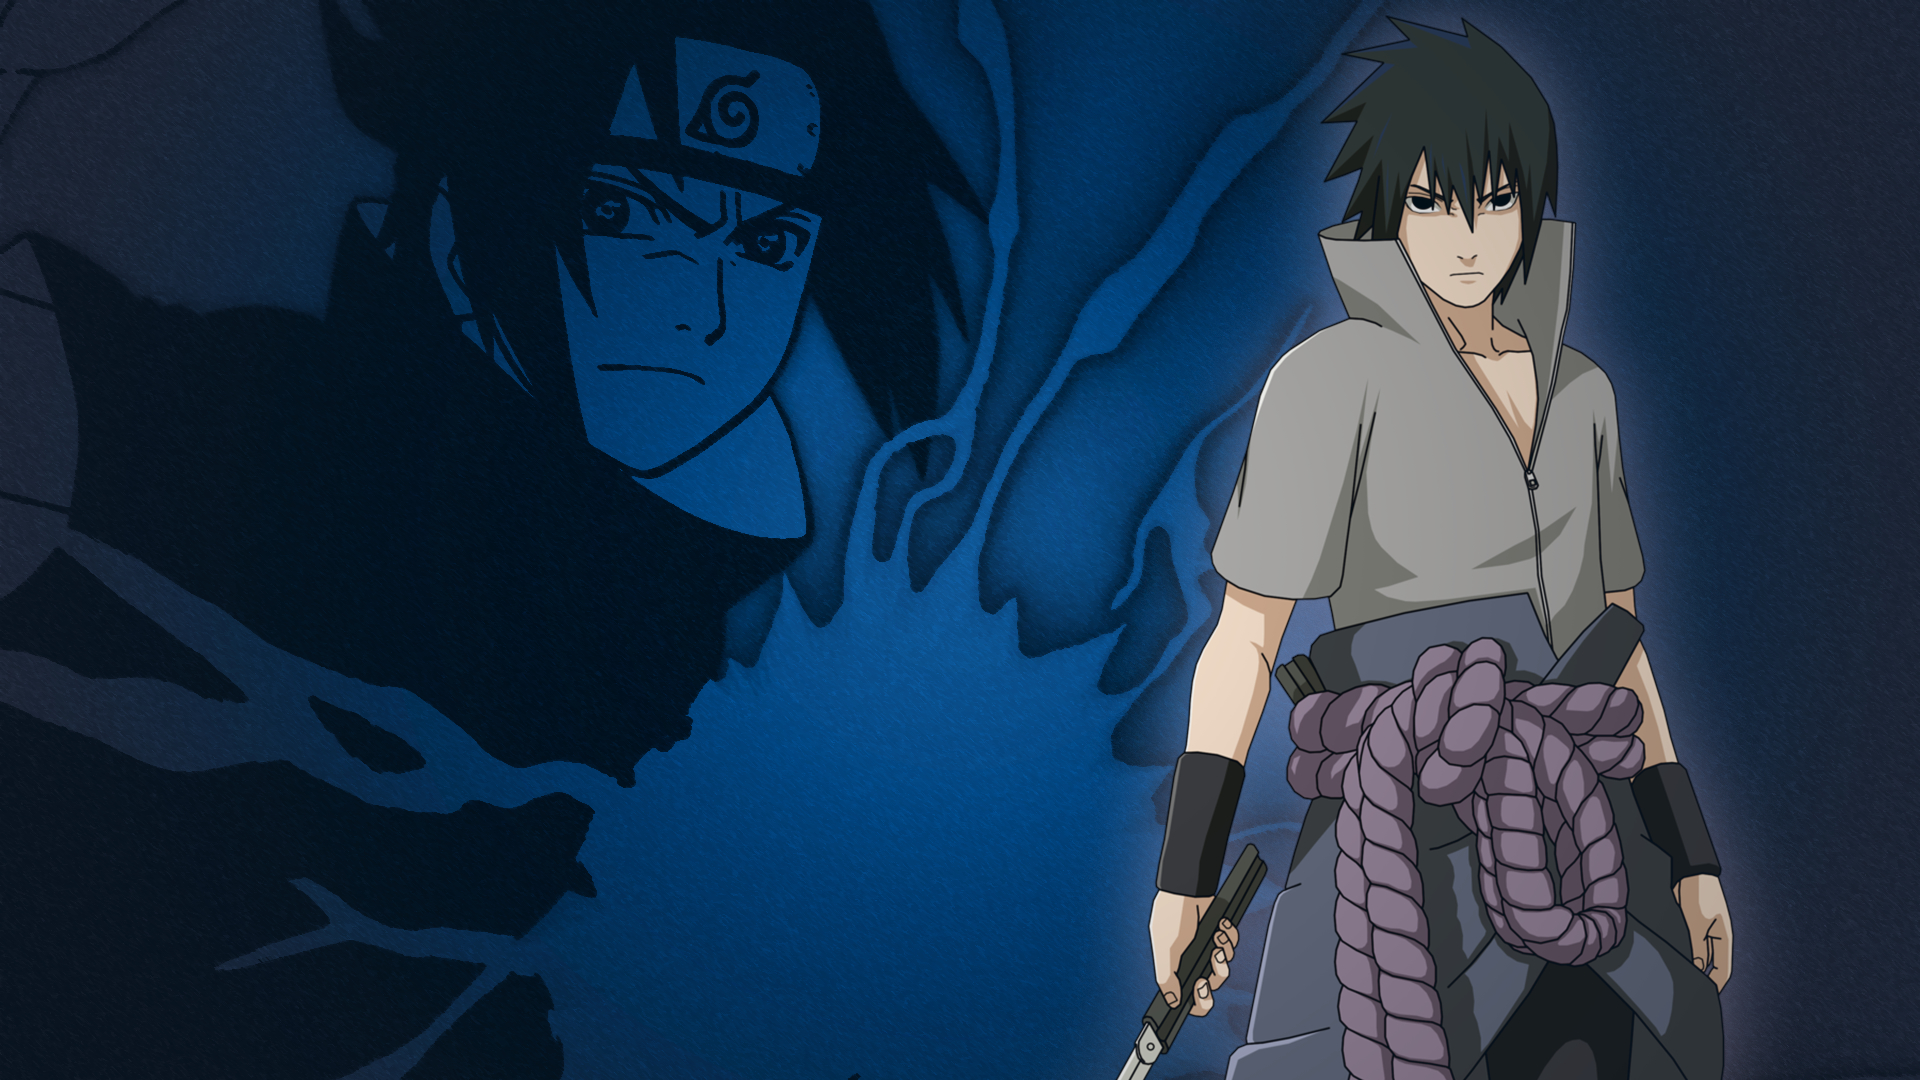  Anime  Naruto And Sasuke  Wallpapers  Wallpaper  Cave